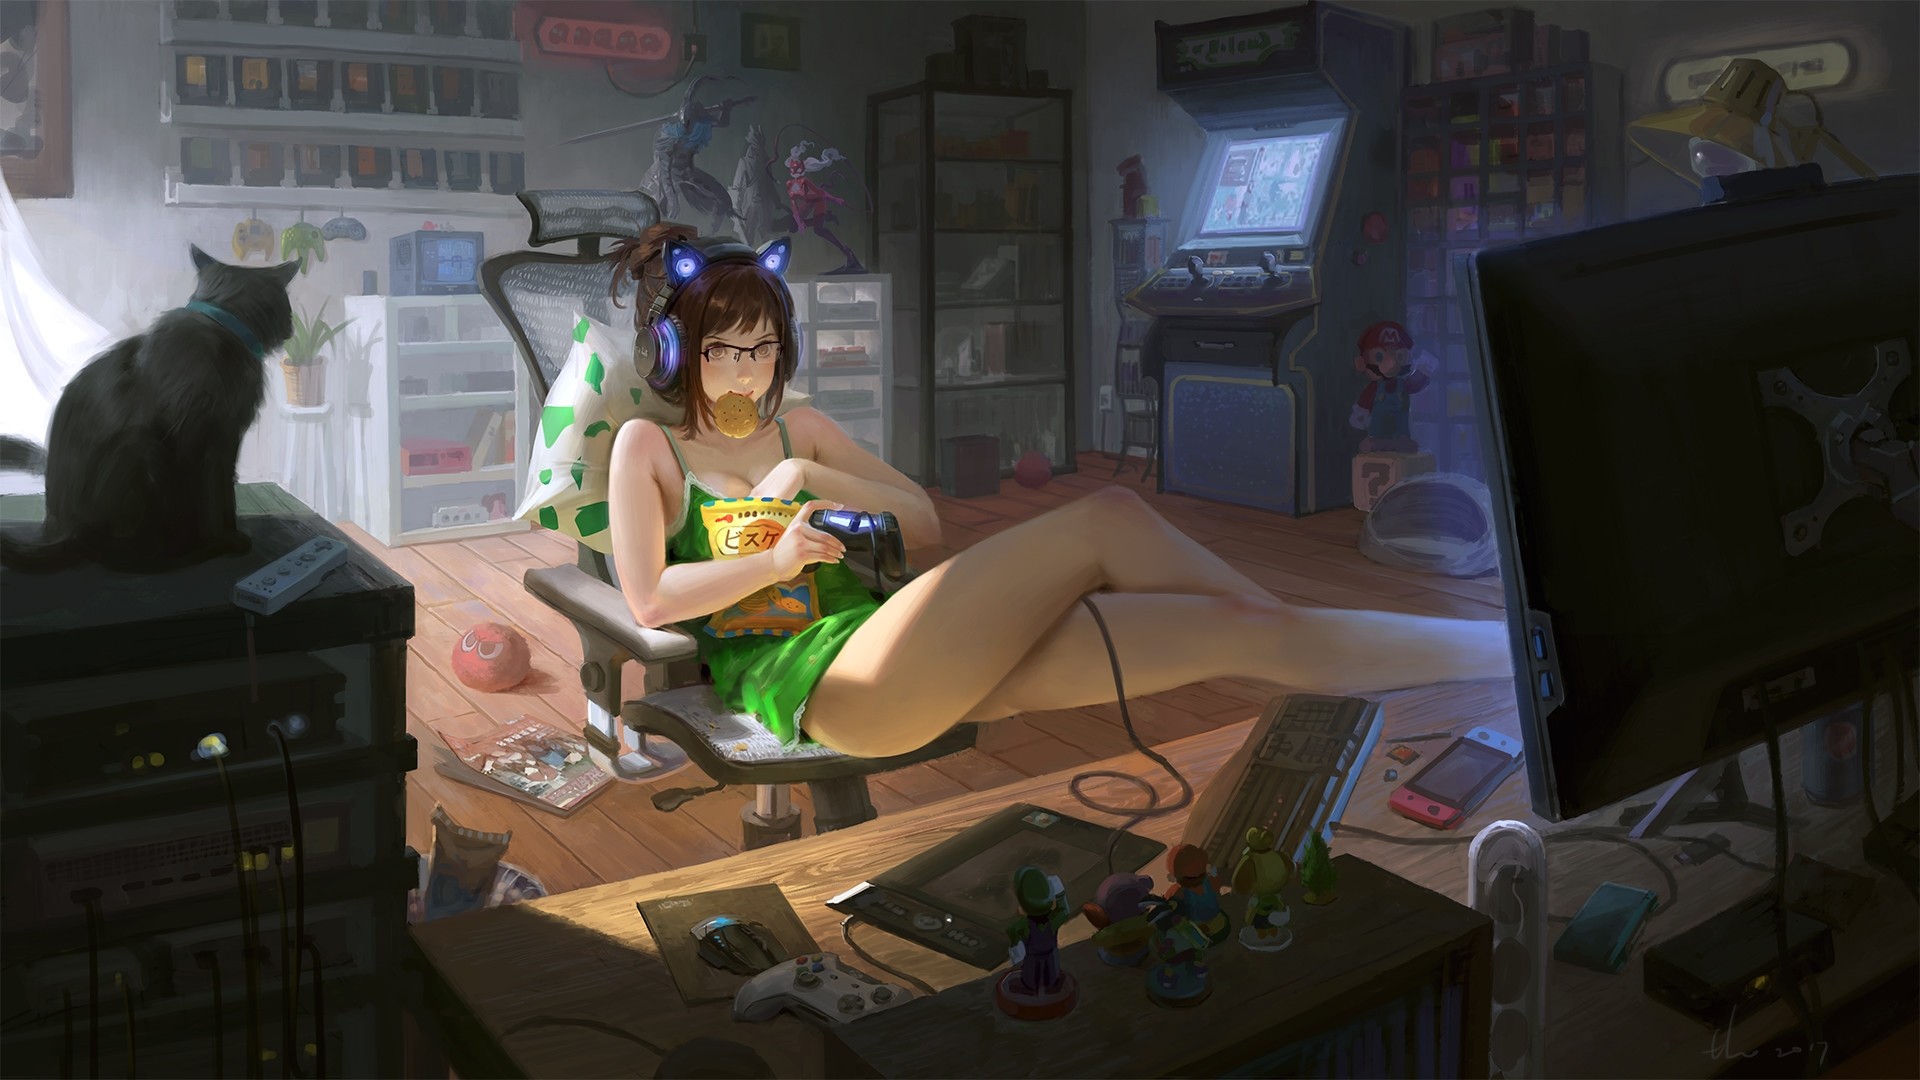 Gamer Girl wallpaper theme